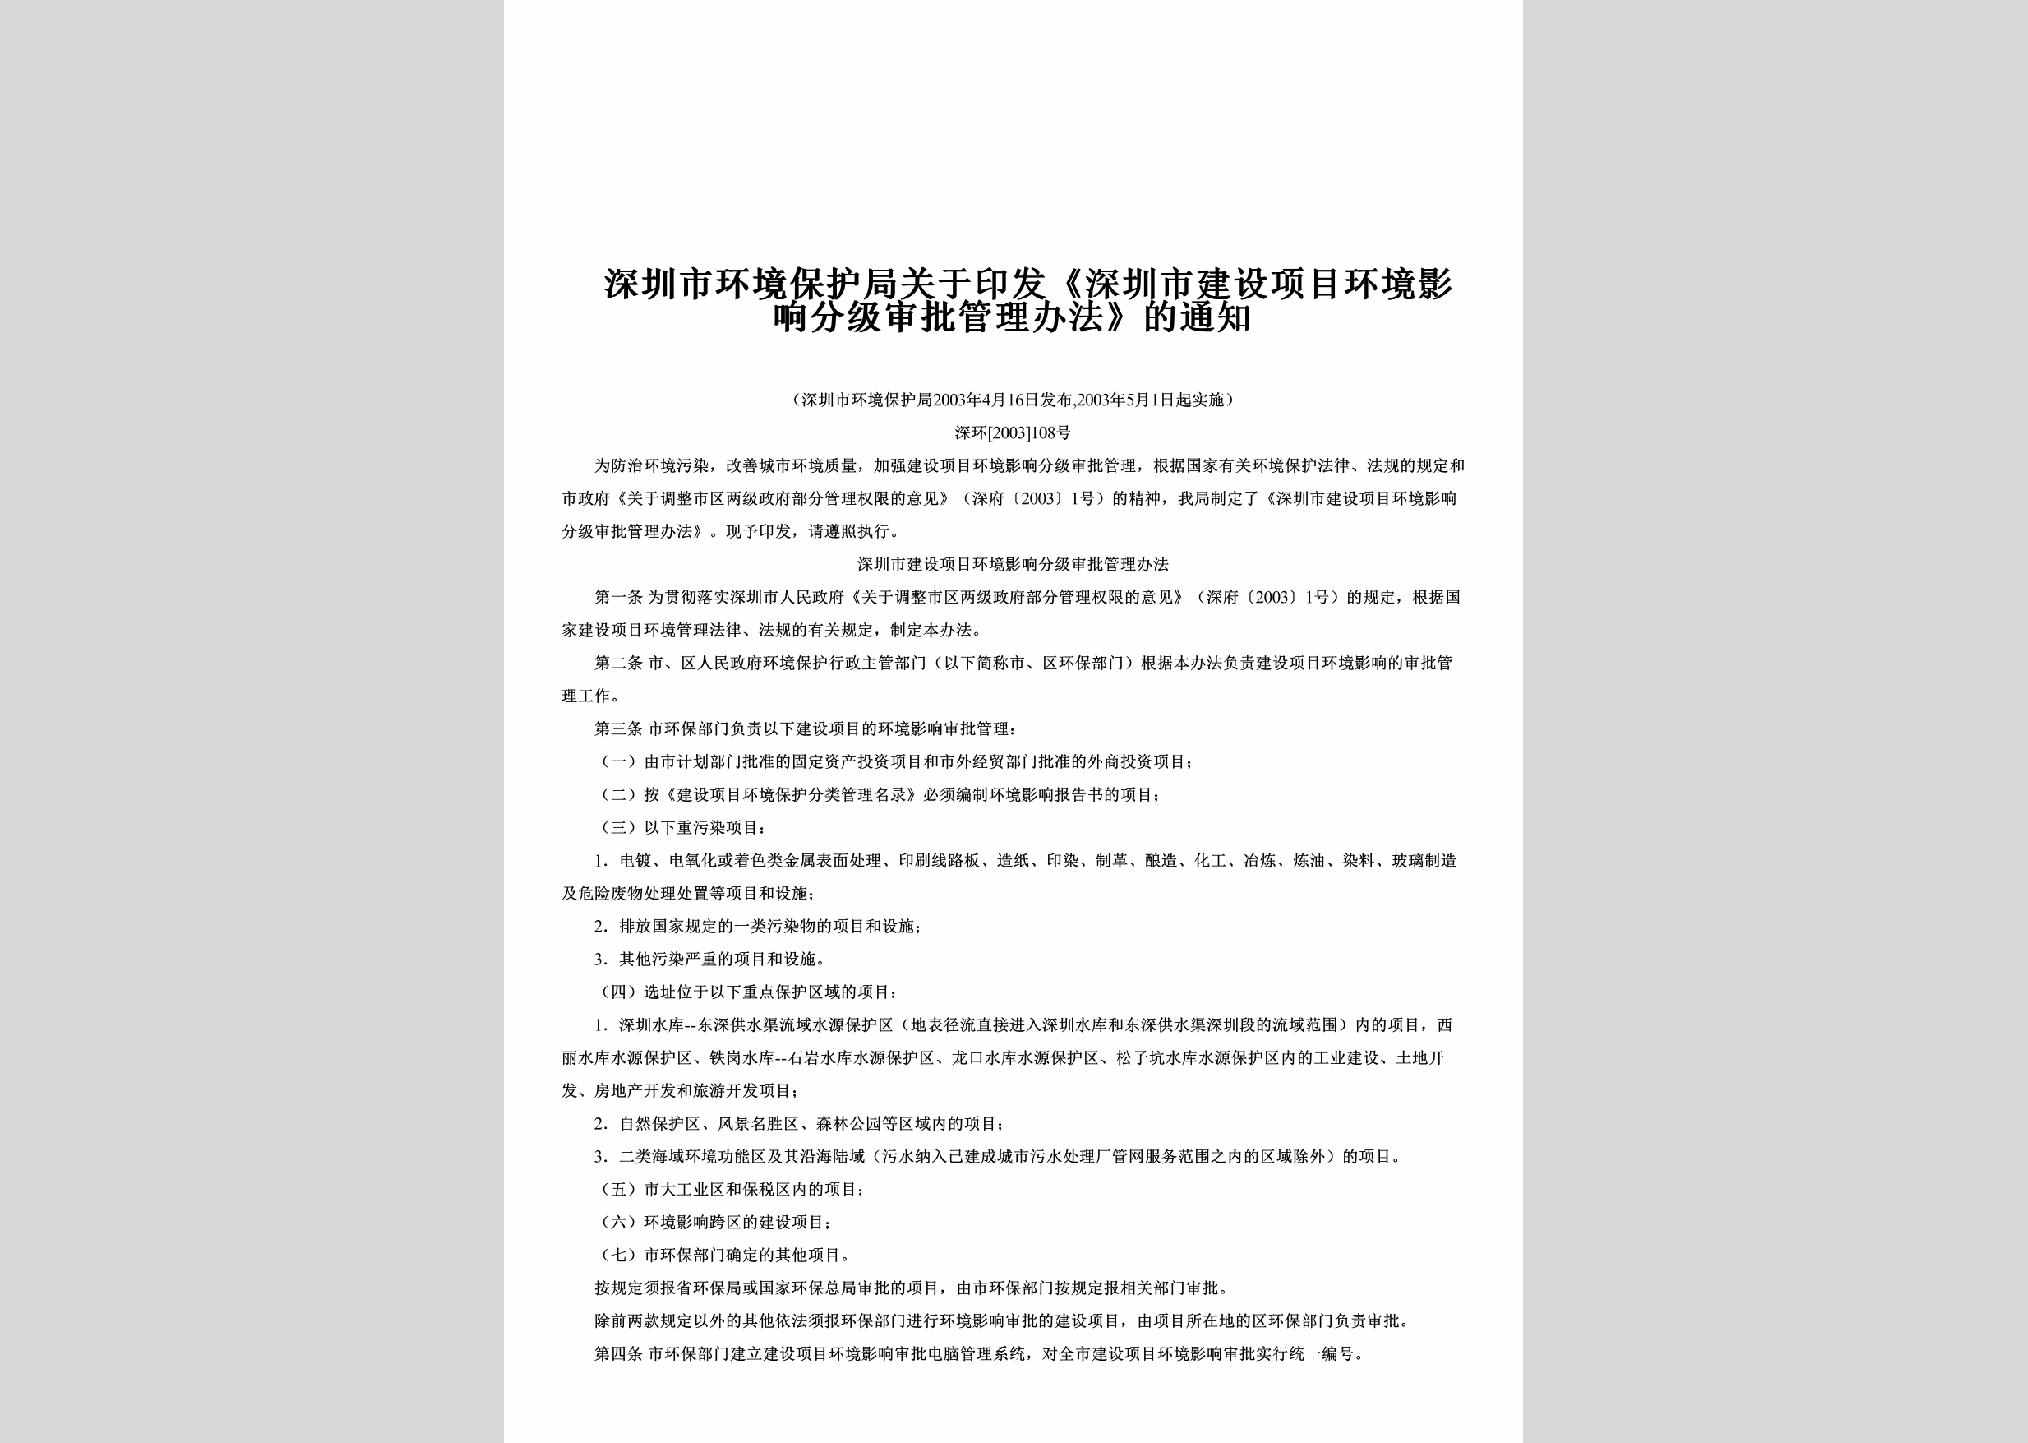 深环[2003]108号：关于印发《深圳市建设项目环境影响分级审批管理办法》的通知